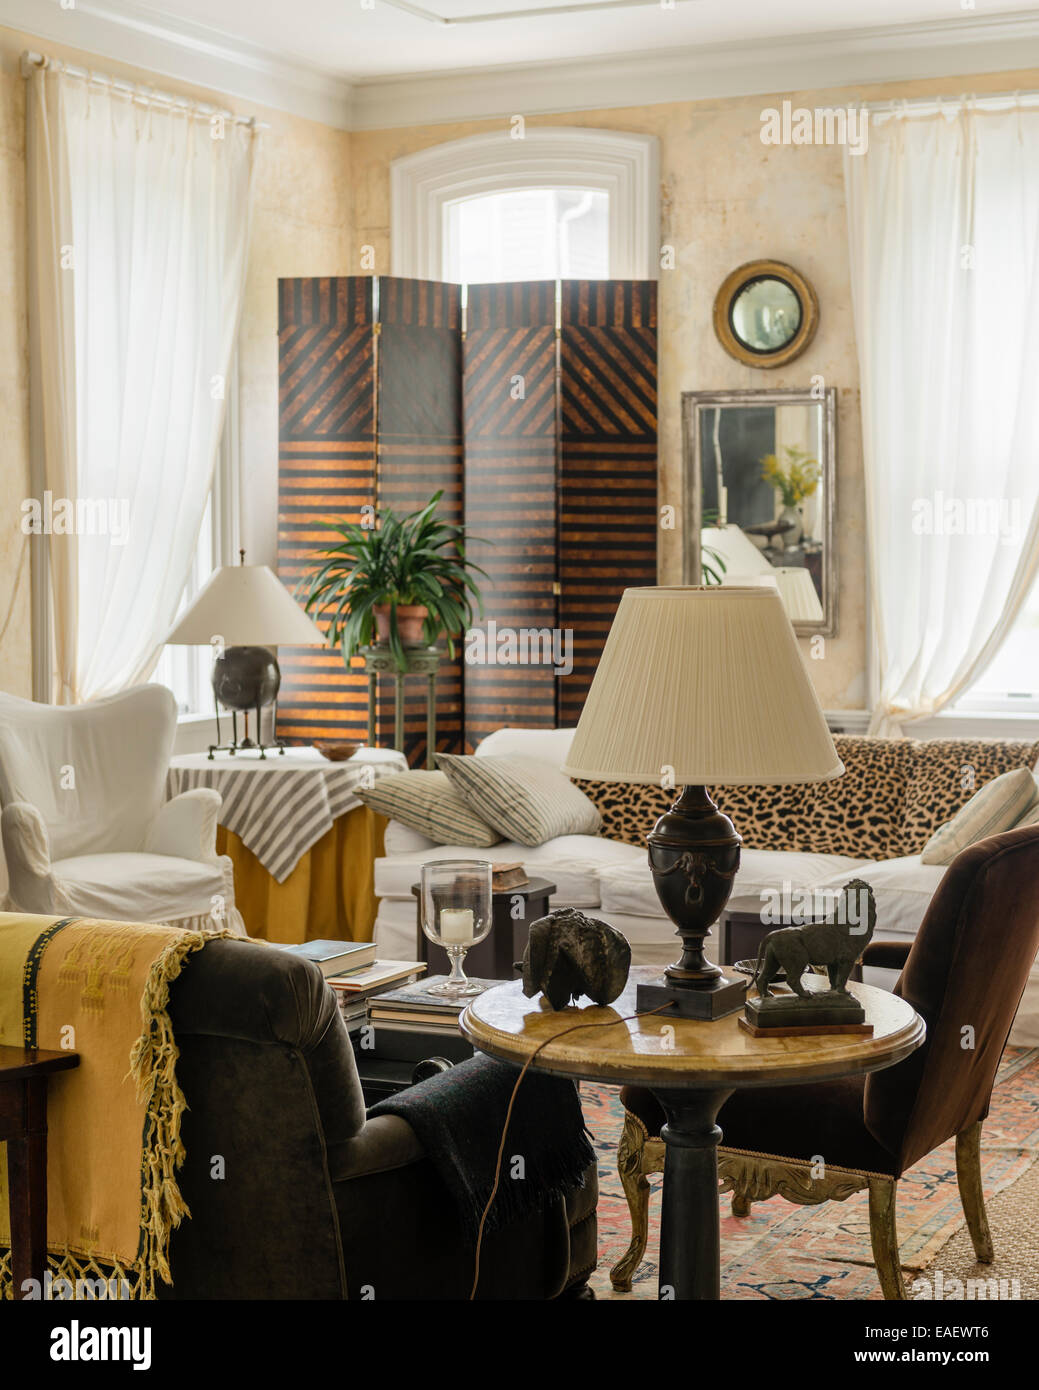 Rideaux de mousseline blanche dans la salle de séjour avec écran à 4 segments par Frank Faulkner et lampes de table Banque D'Images